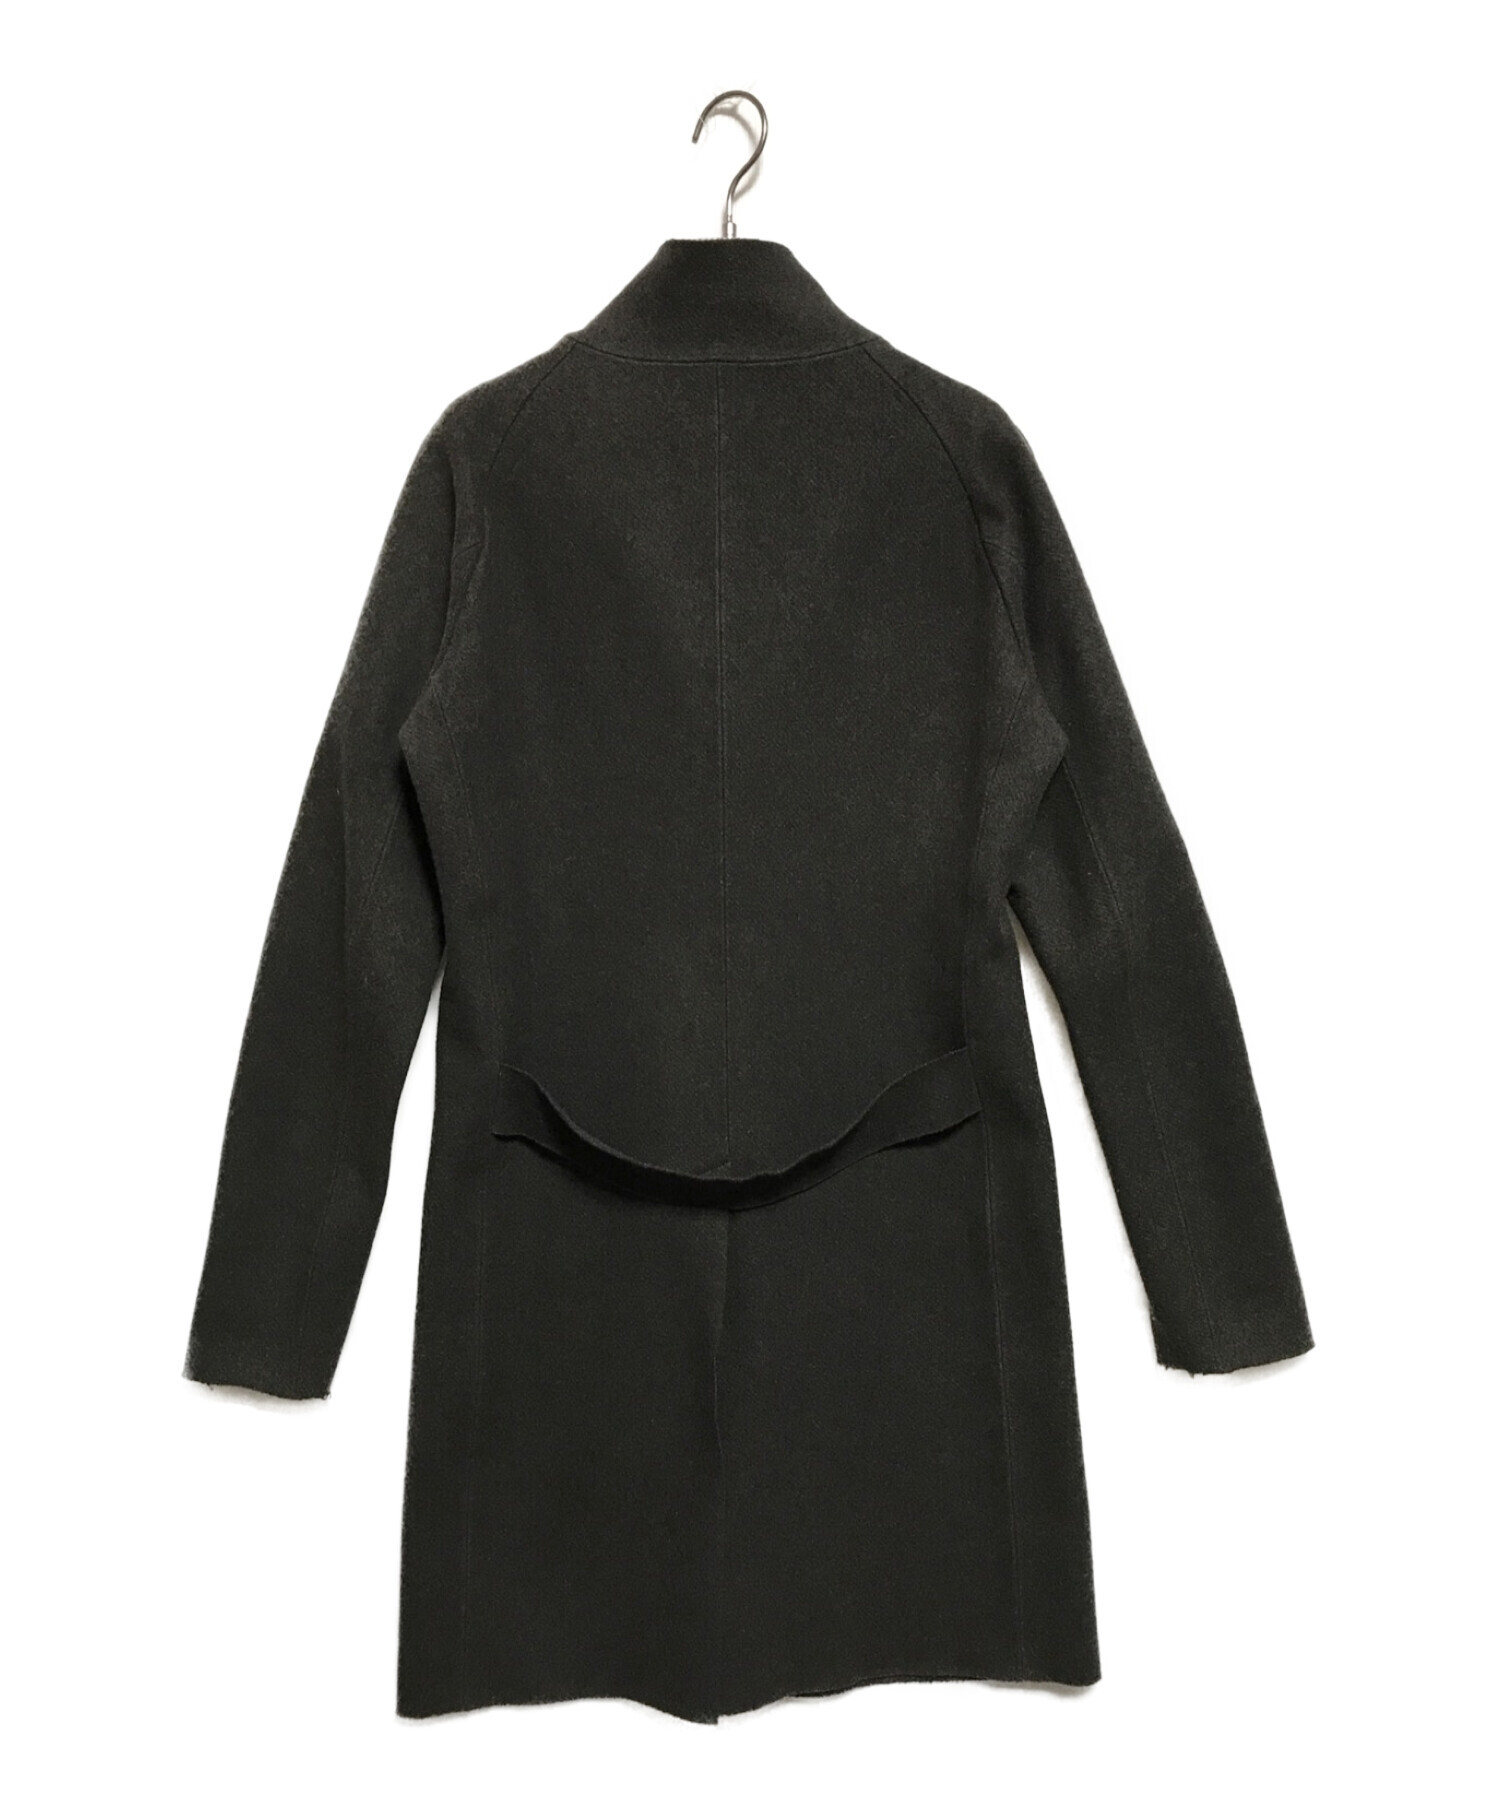 カズユキクマガイ アタッチメント スタンドカラーコート 黒 1 定価86900円お色はブラックでサイズは1です